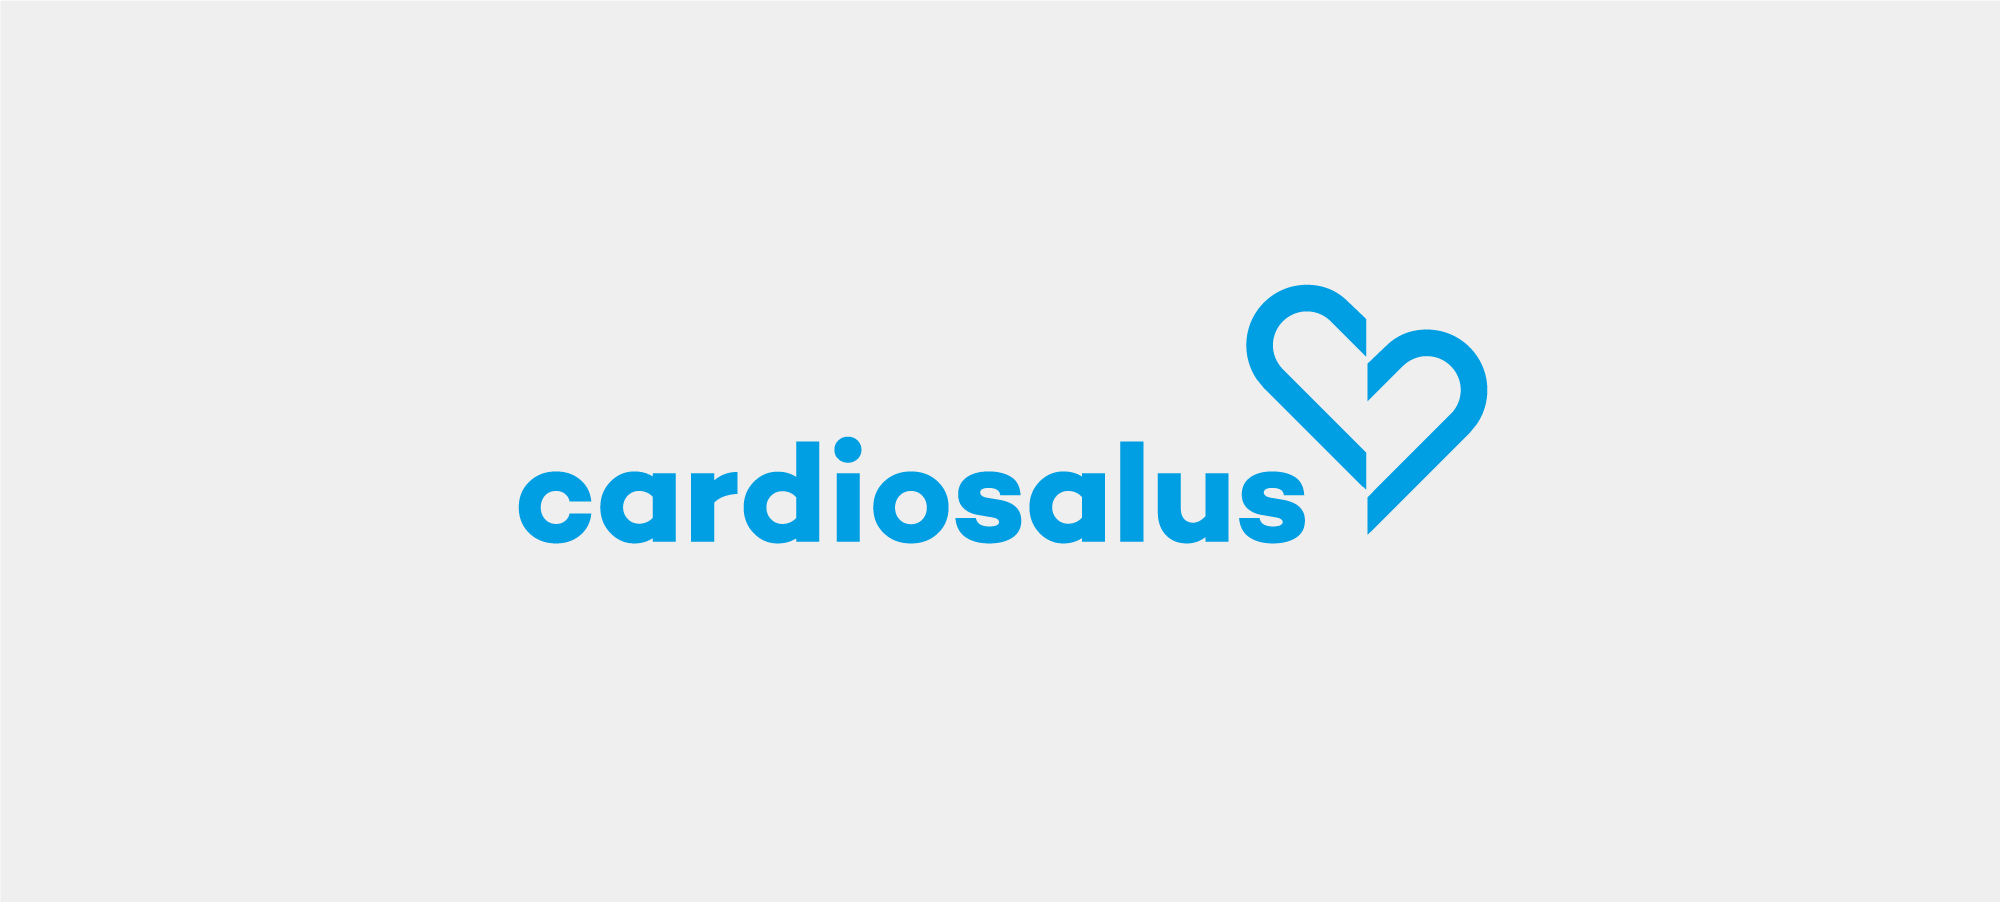 Cardiosalus